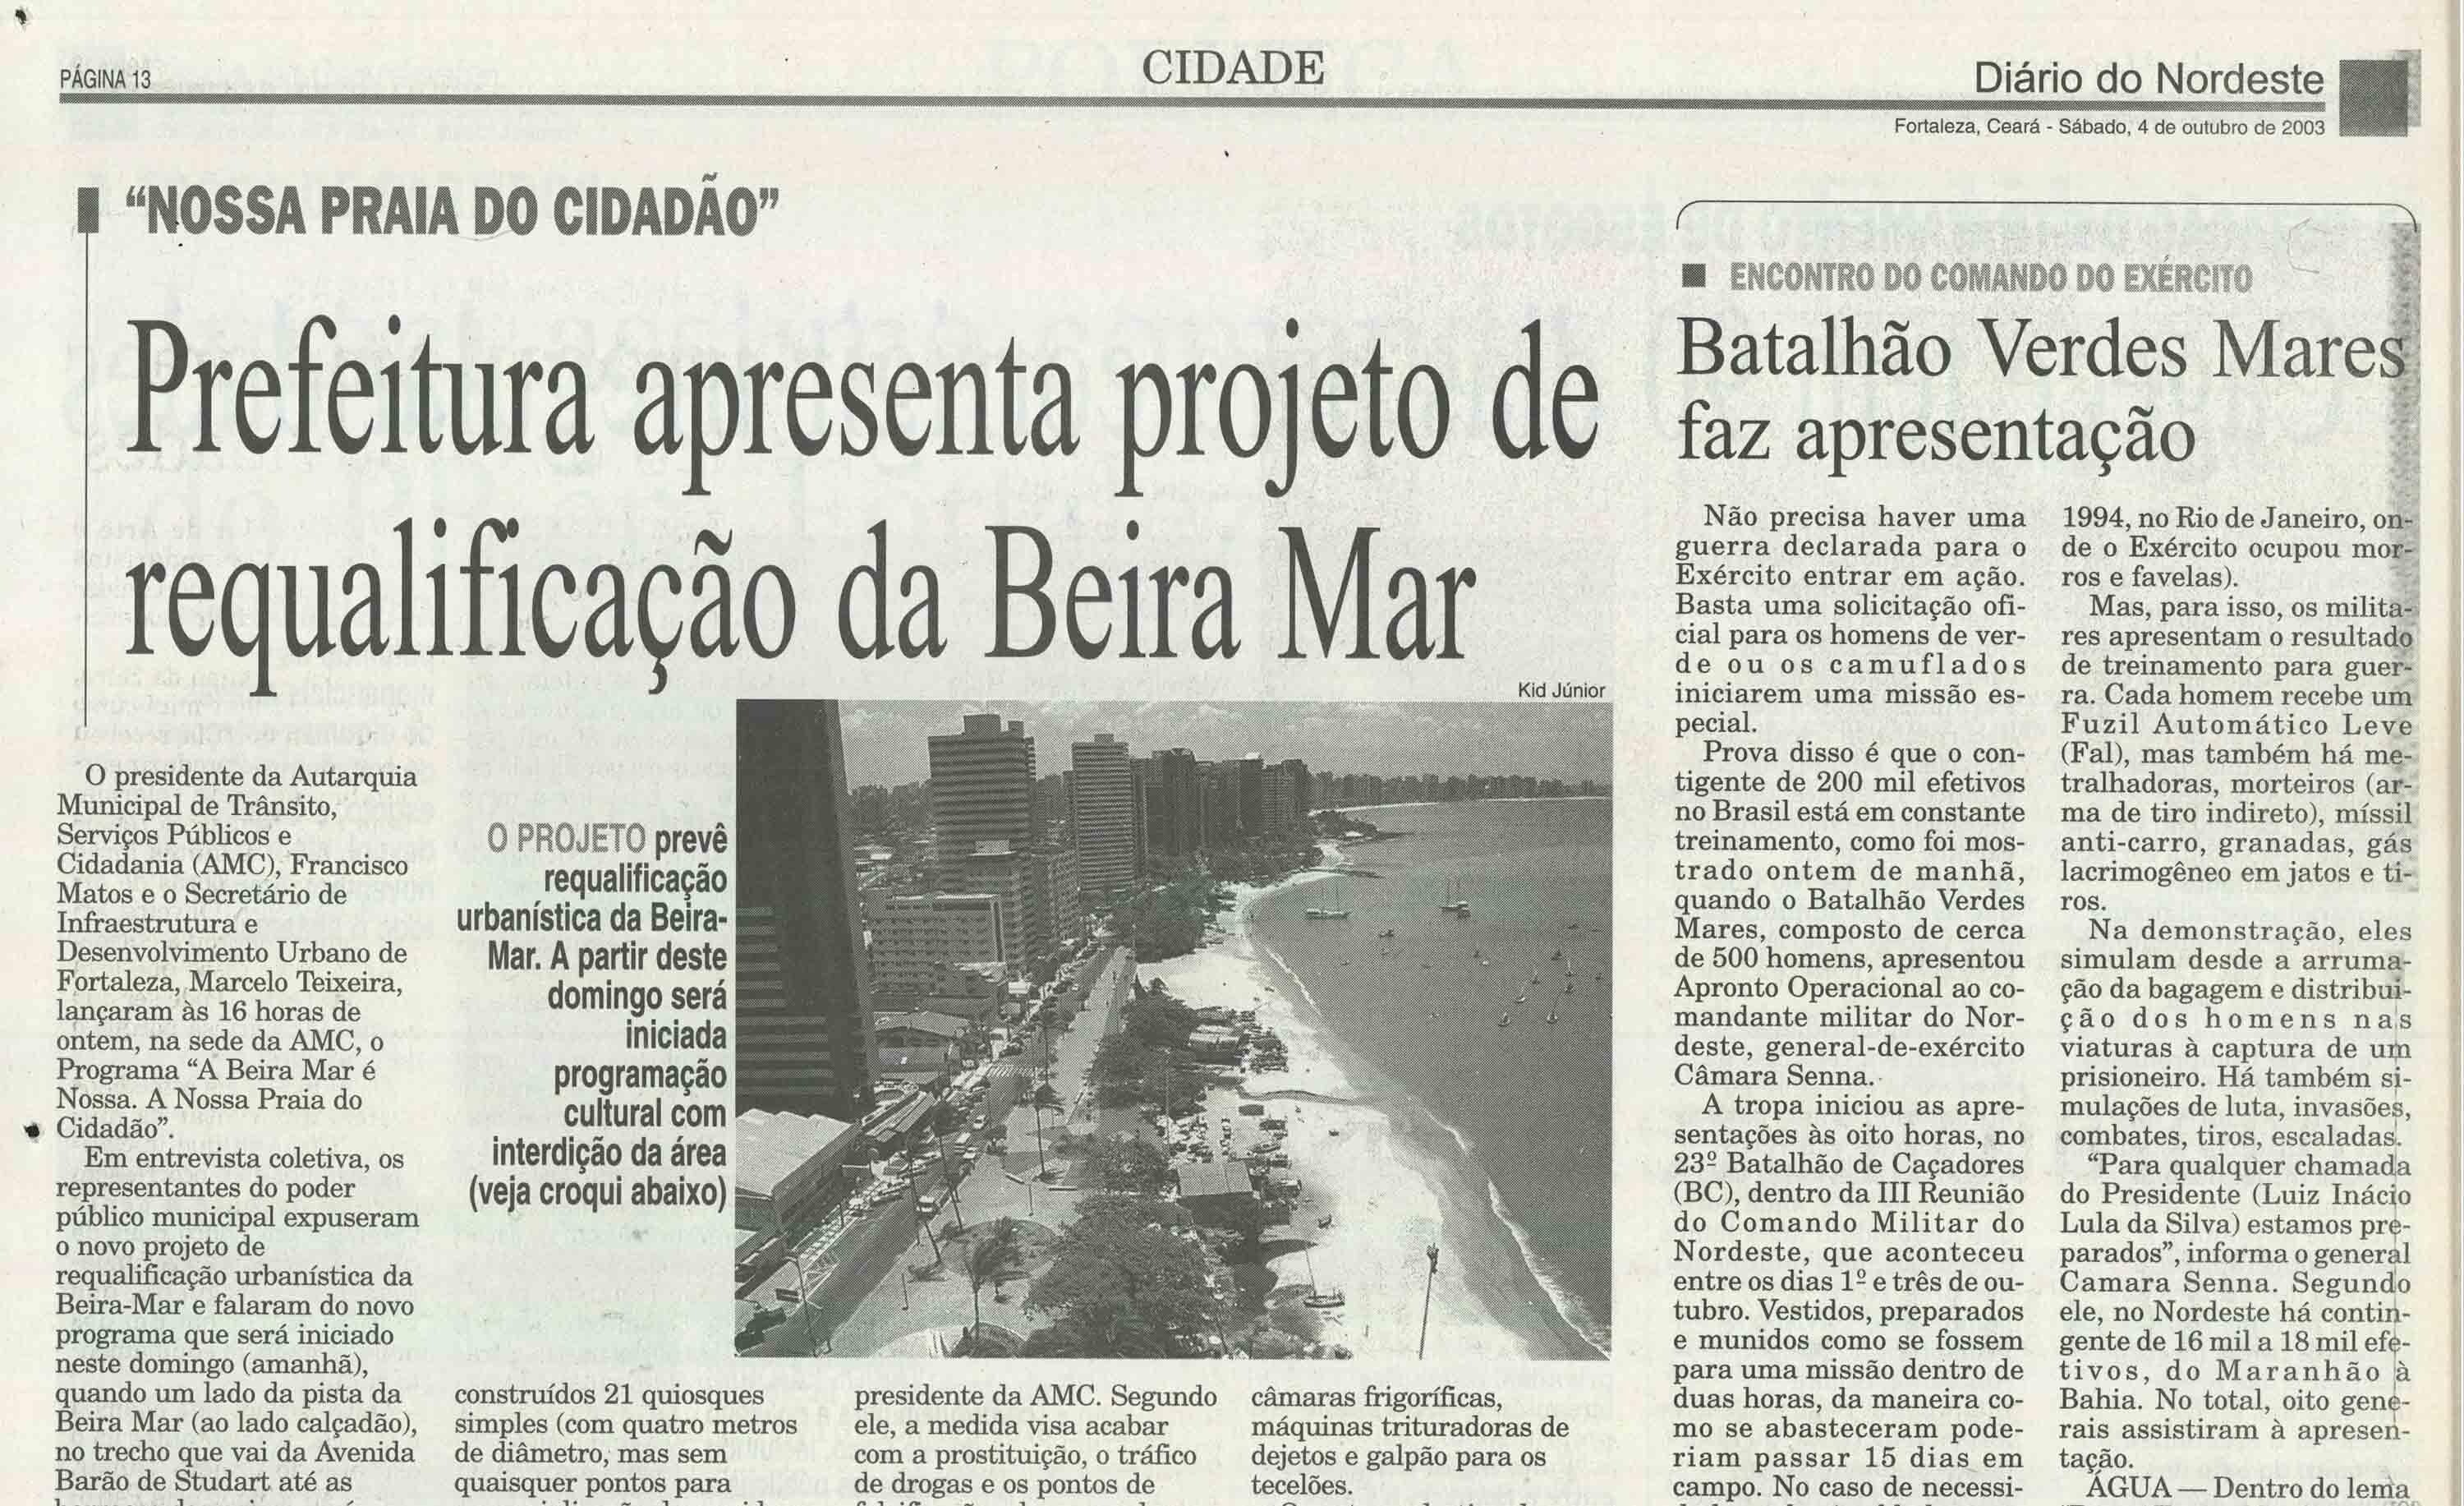 Anúncio em jornal de requalificação na Beira Mar, em Fortaleza